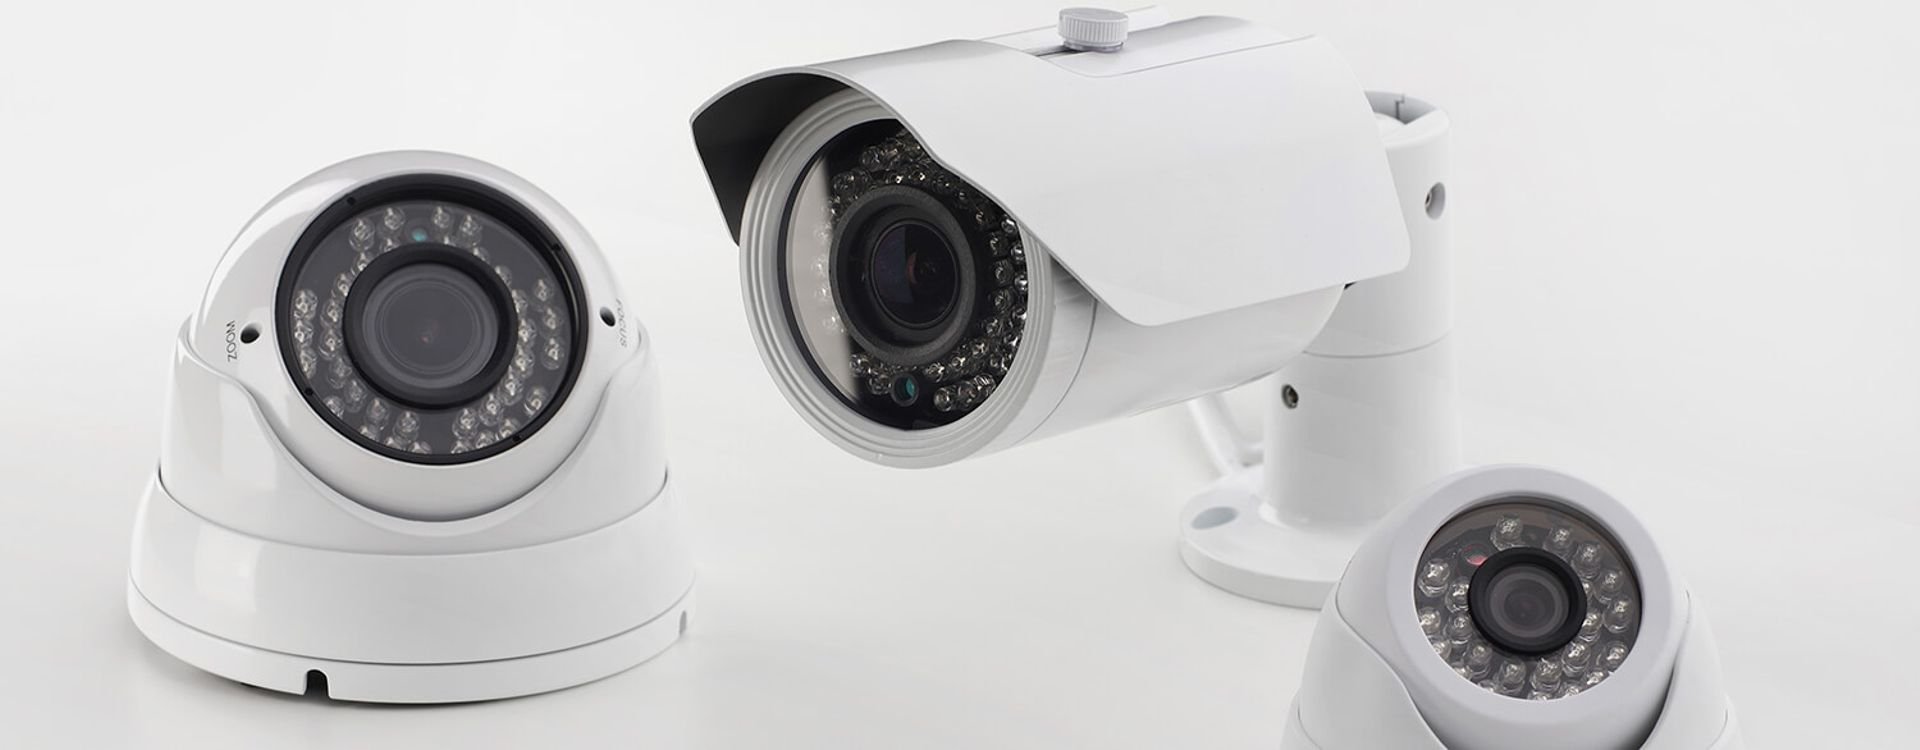 اربيل تستعين بخمسة الاف كاميرا مراقبة للمحافظة على امنها وكشف المجرمين